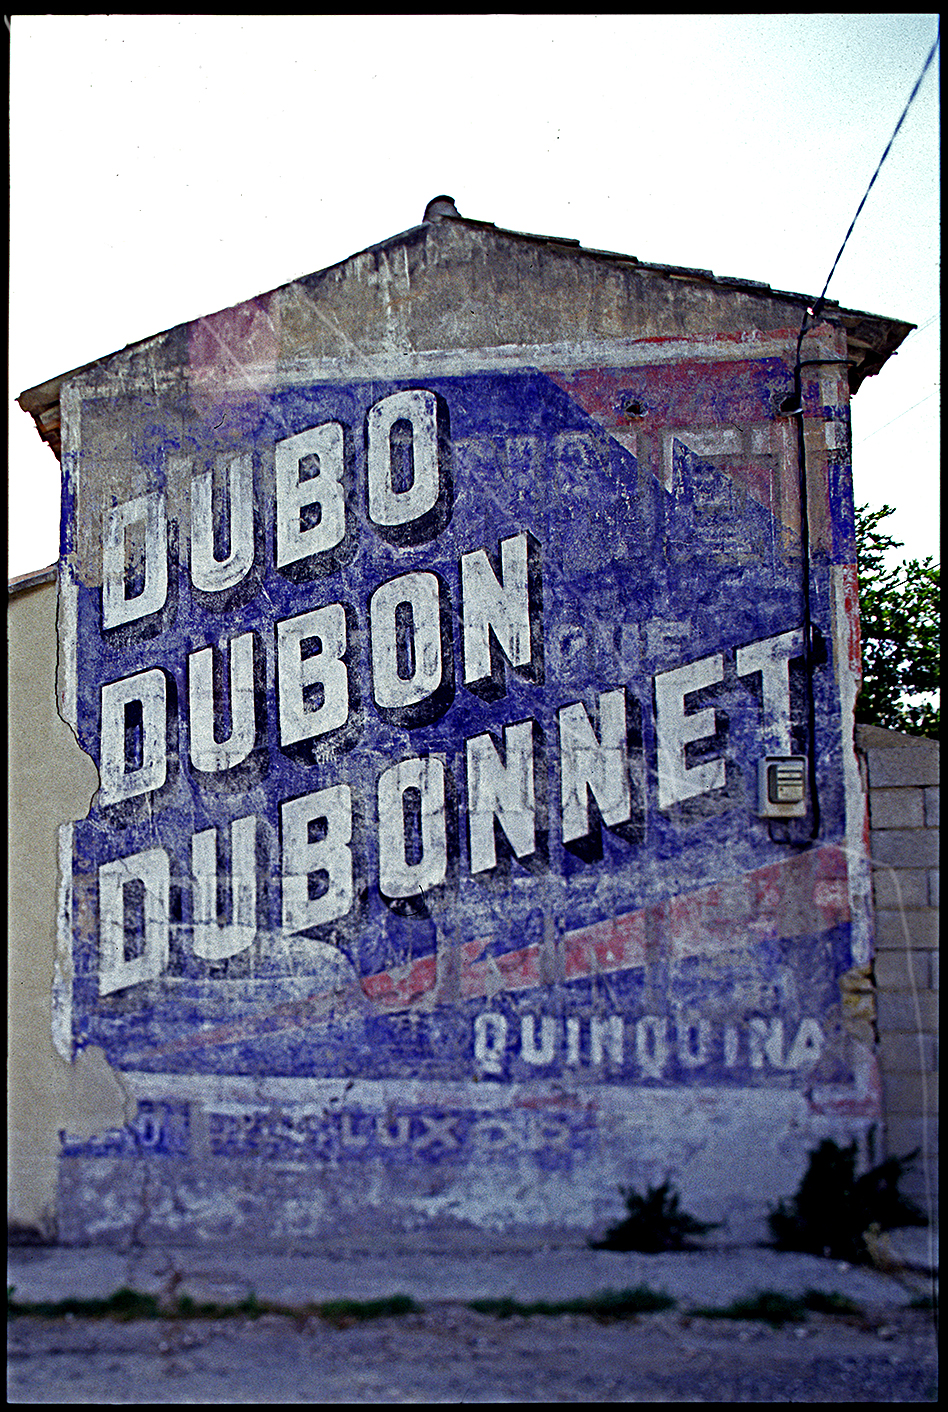 Dubo-Dubon-Dubonnet